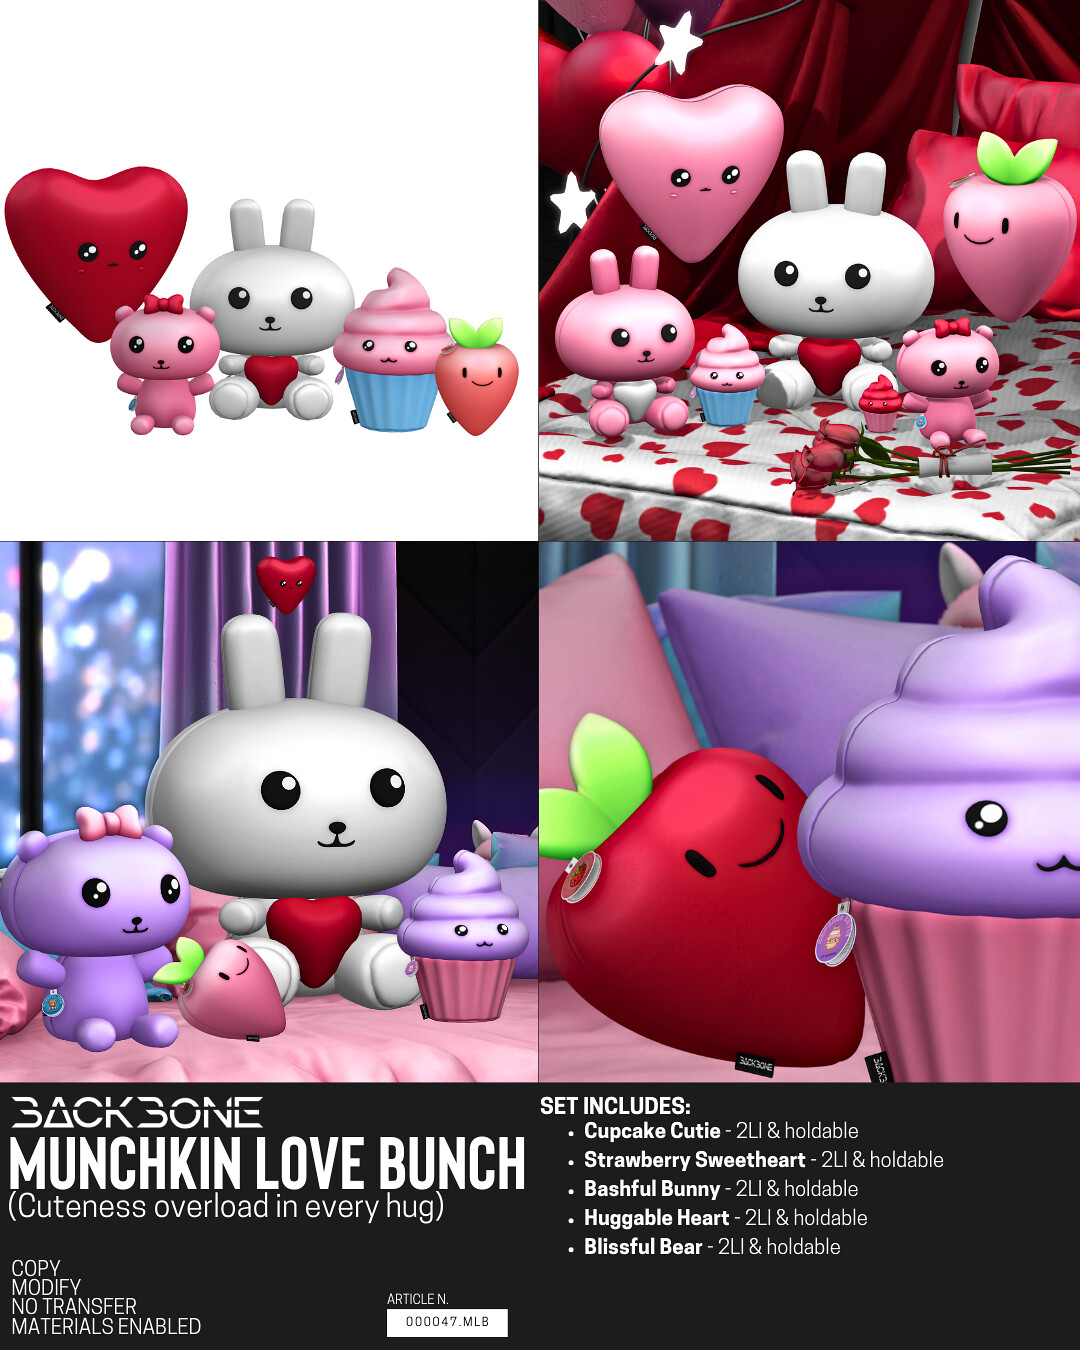 BackBone – Munchkin Love Bunch